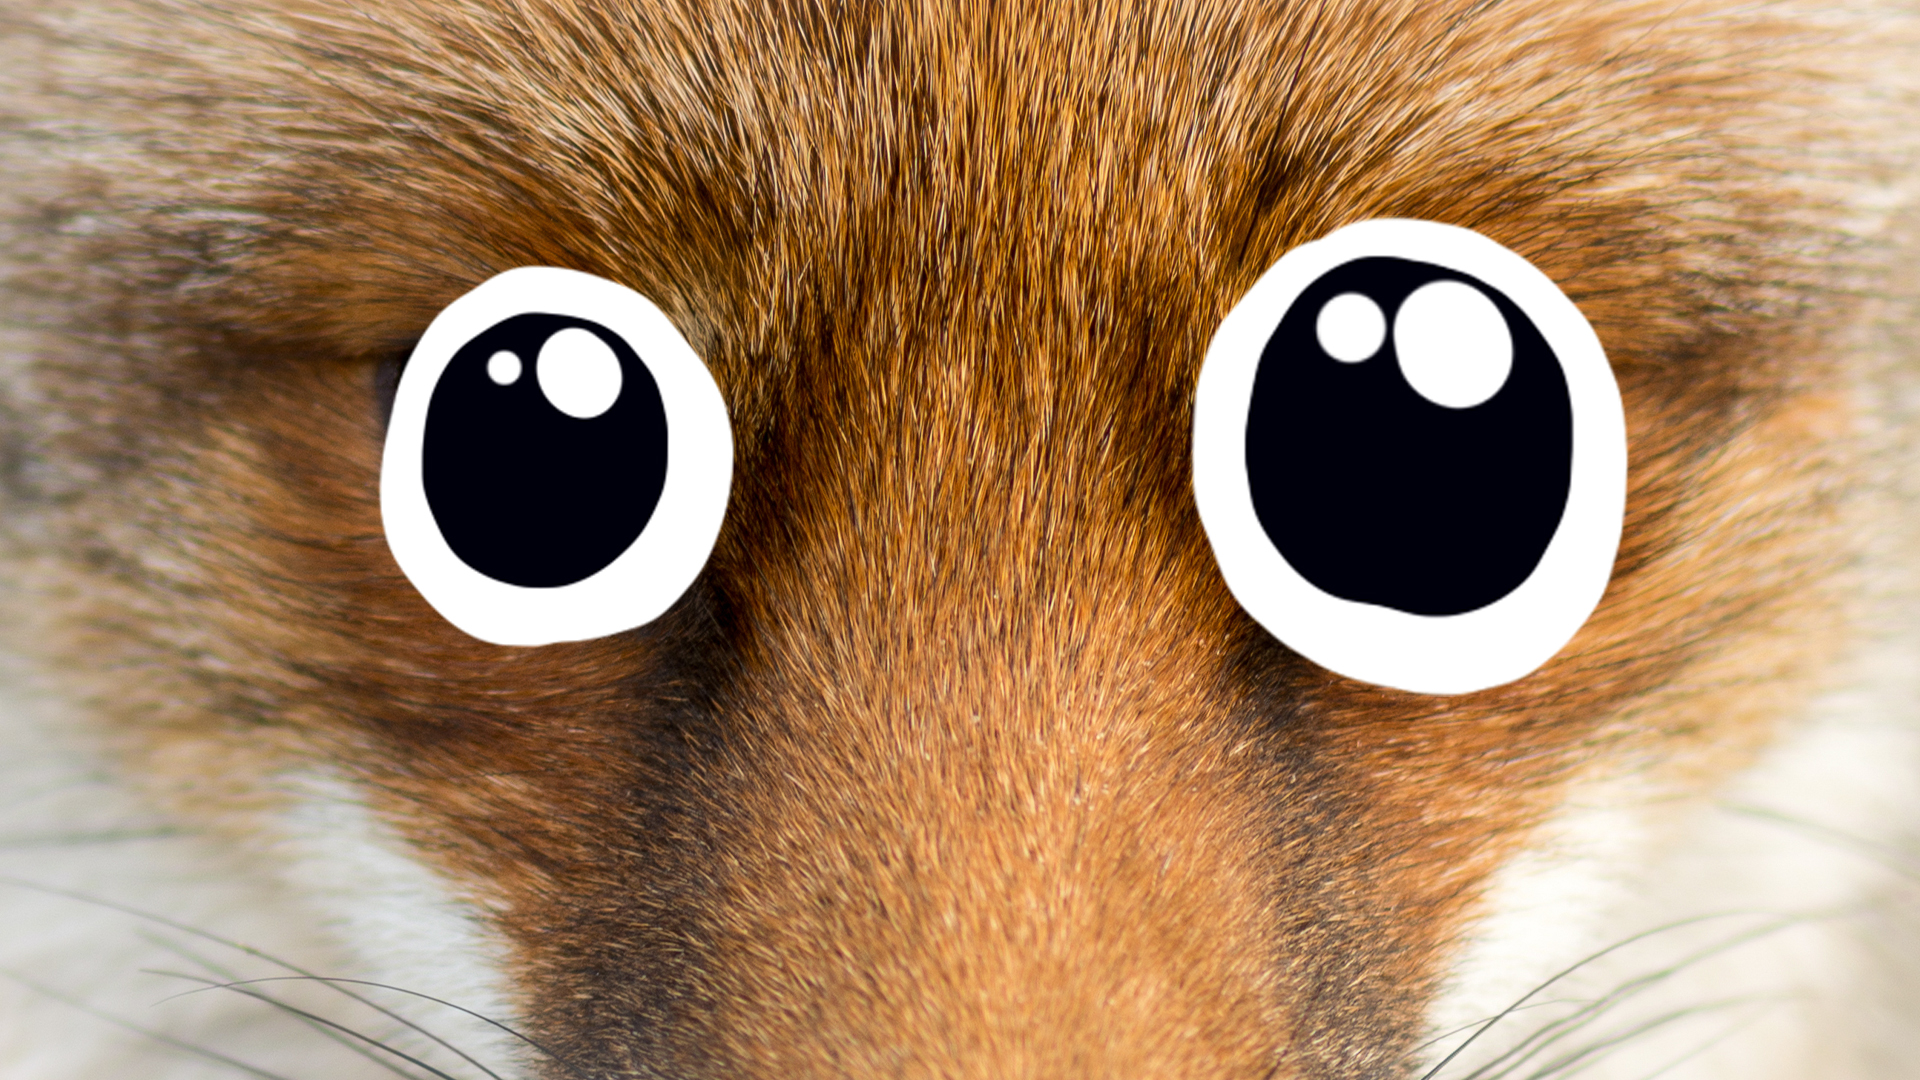 A fox face